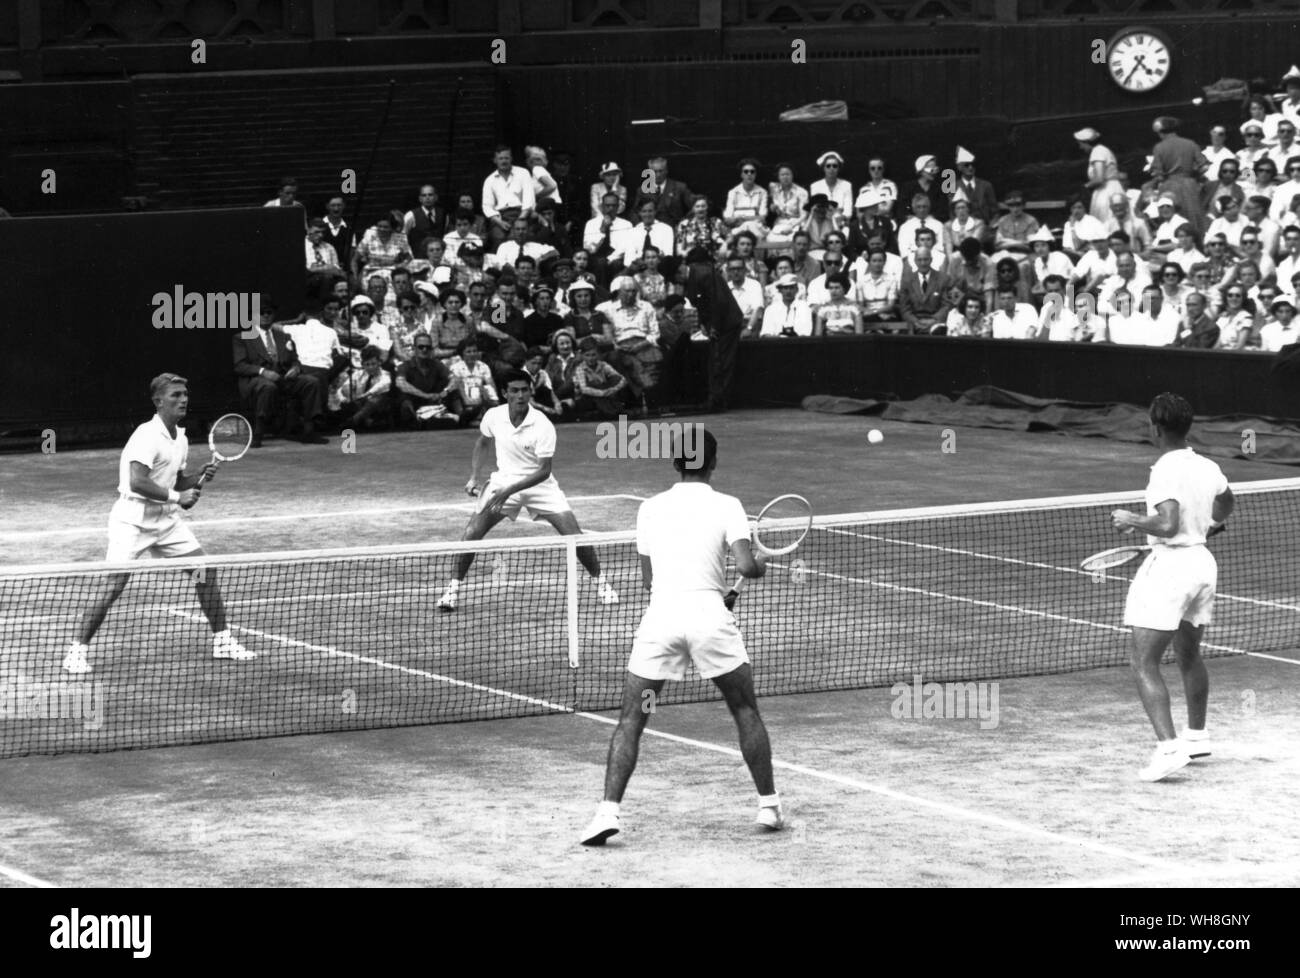 Wimbledon 1953 en double finales Lewis Hoad (à gauche) et Ken Rosewell (loin du net) a défait le gaucher Mervyn Rose et Rex Hartwig. L'Encyclopédie canadienne de tennis page 38. Banque D'Images